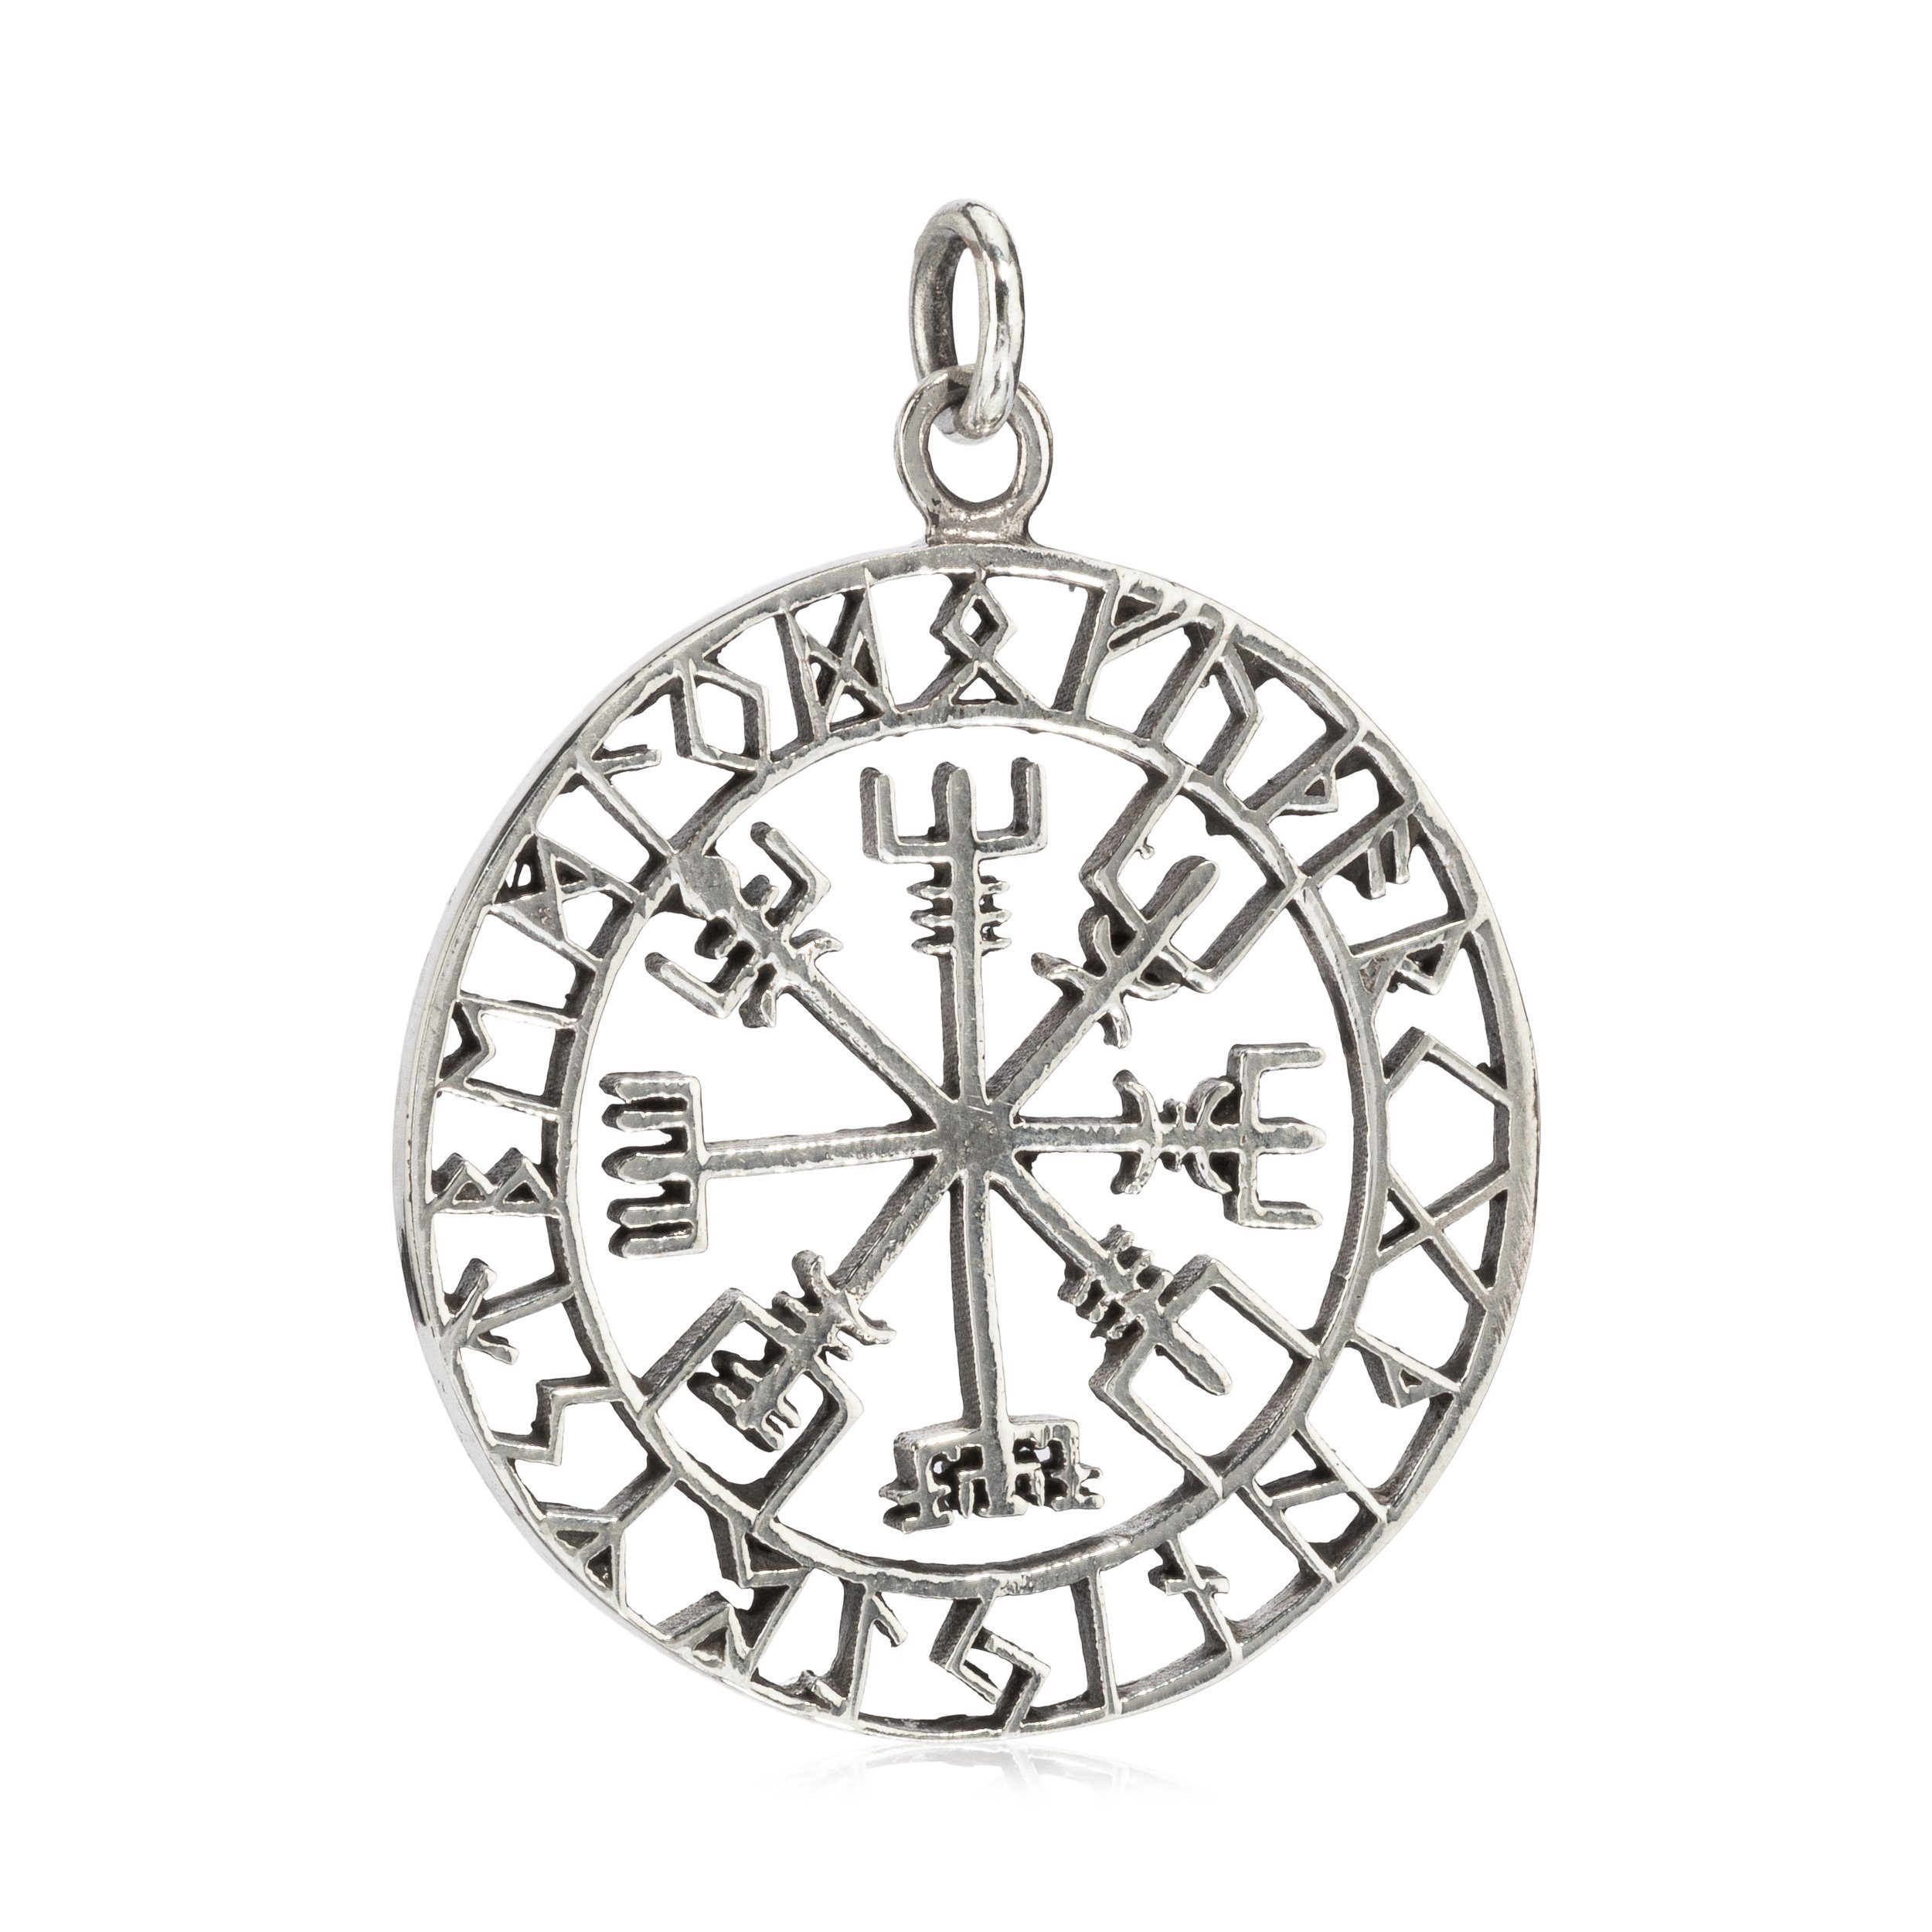 Kettenanhänger Amulett für Kettenanhänger Damen Vegvisir Silber Silberschmuck Runen Silbe, 925 Sterling 3,6cm NKlaus